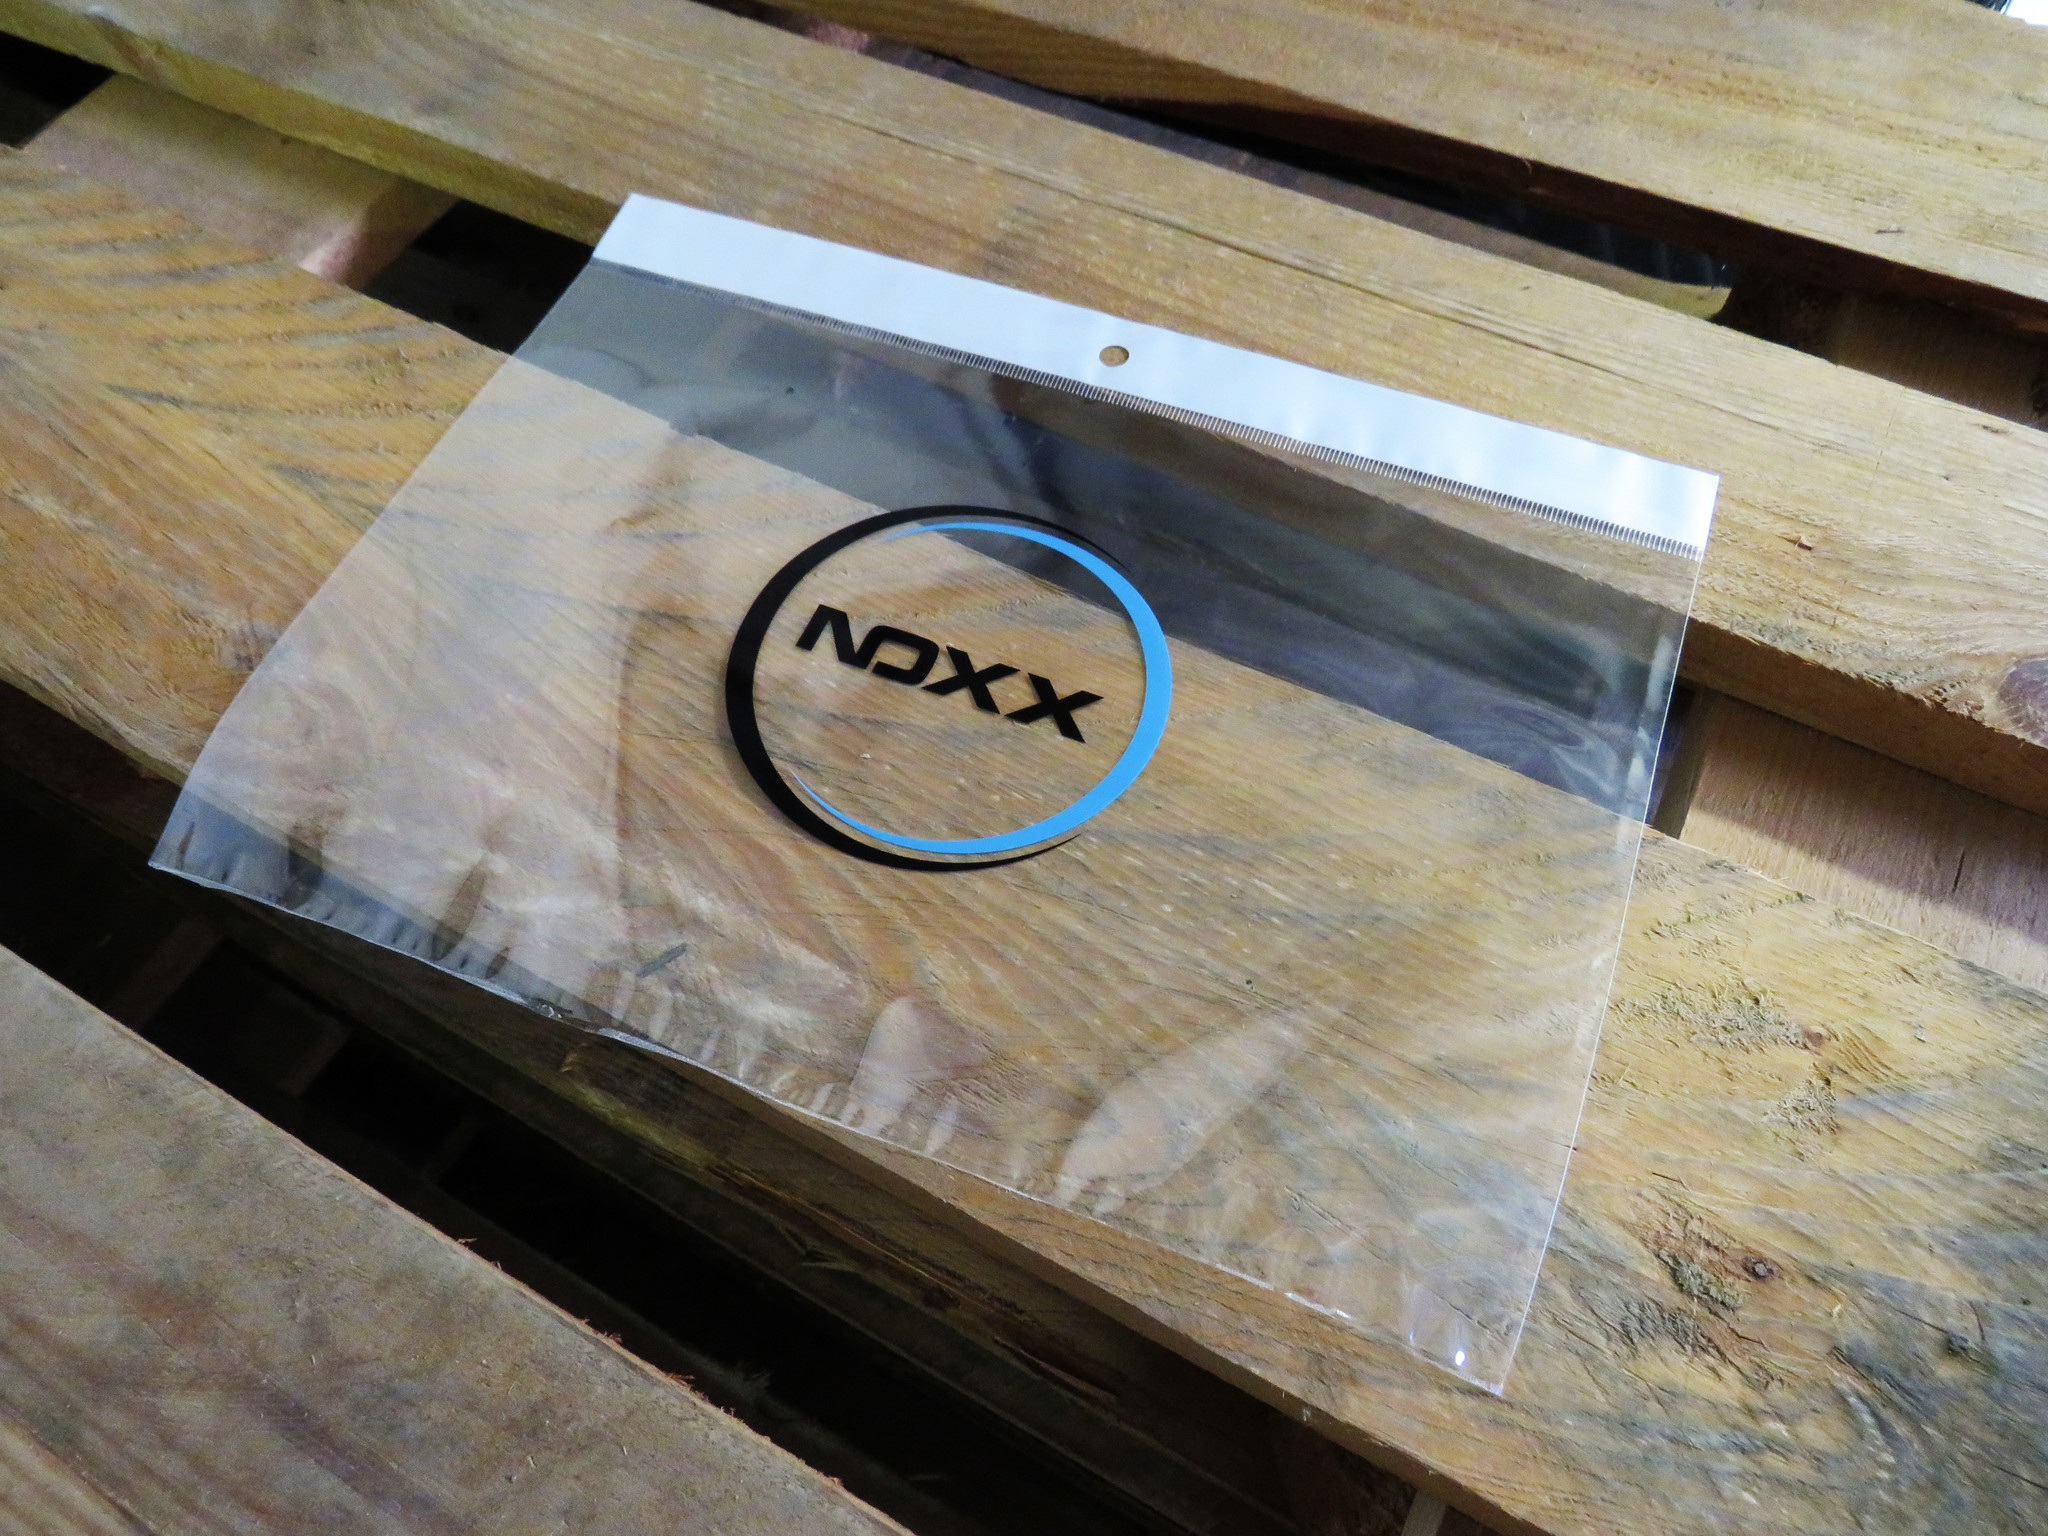 NoXx Lenovo Tab P11 Pro (Gen 2) Hoesje Case Hard Cover Met Lenovo Pen Uitsparing Hoes Bookcase Met Screenprotector - Paars